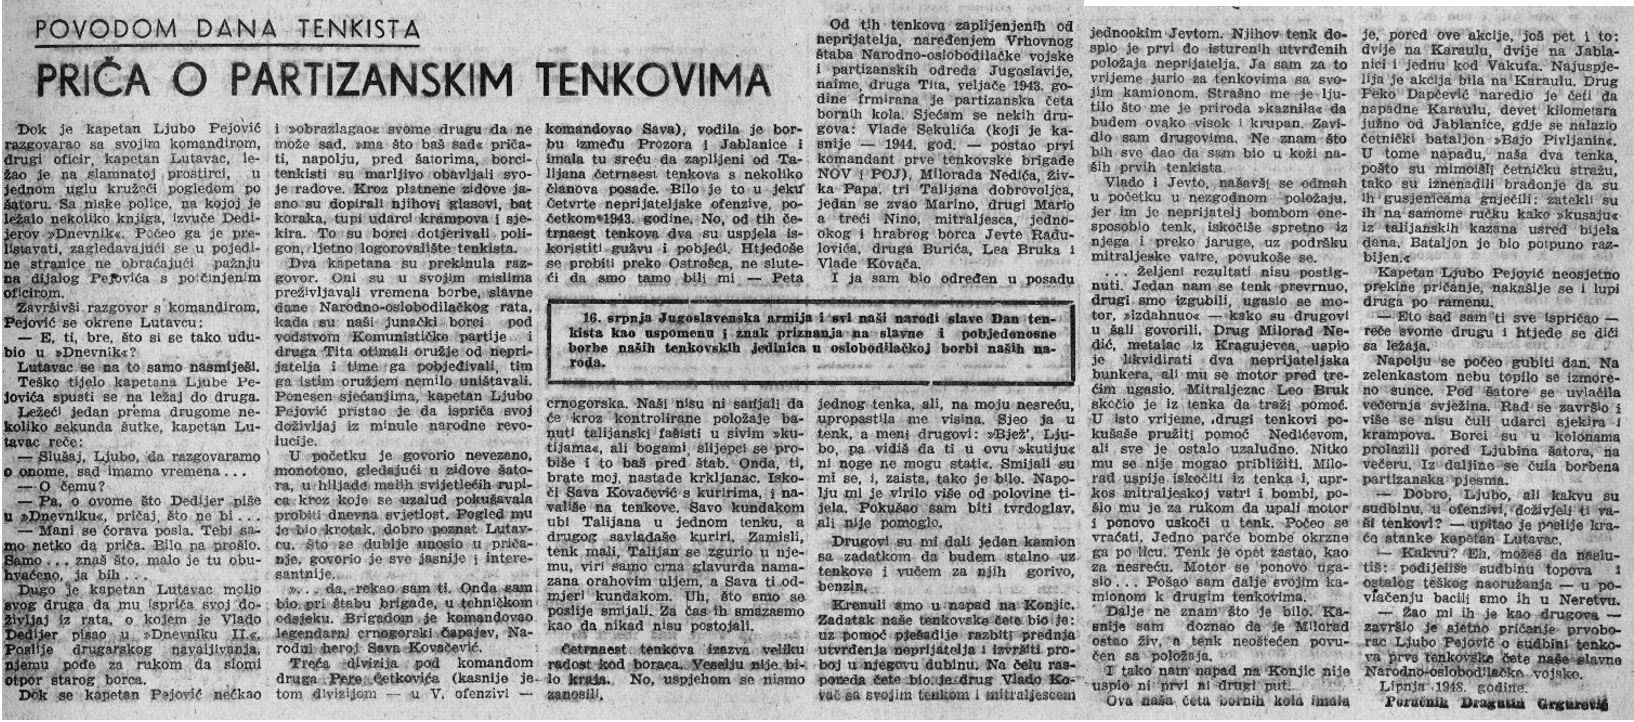 Članak "Priča o partizanskim tenkovima", sa sjećanjem na Lea Bruka tenkistu. Izvor: Slobodna Dalmacija. https://arhiv.slobodnadalmacija.hr/pvpages/pvpages/viewPage/?pv_page_id=212561